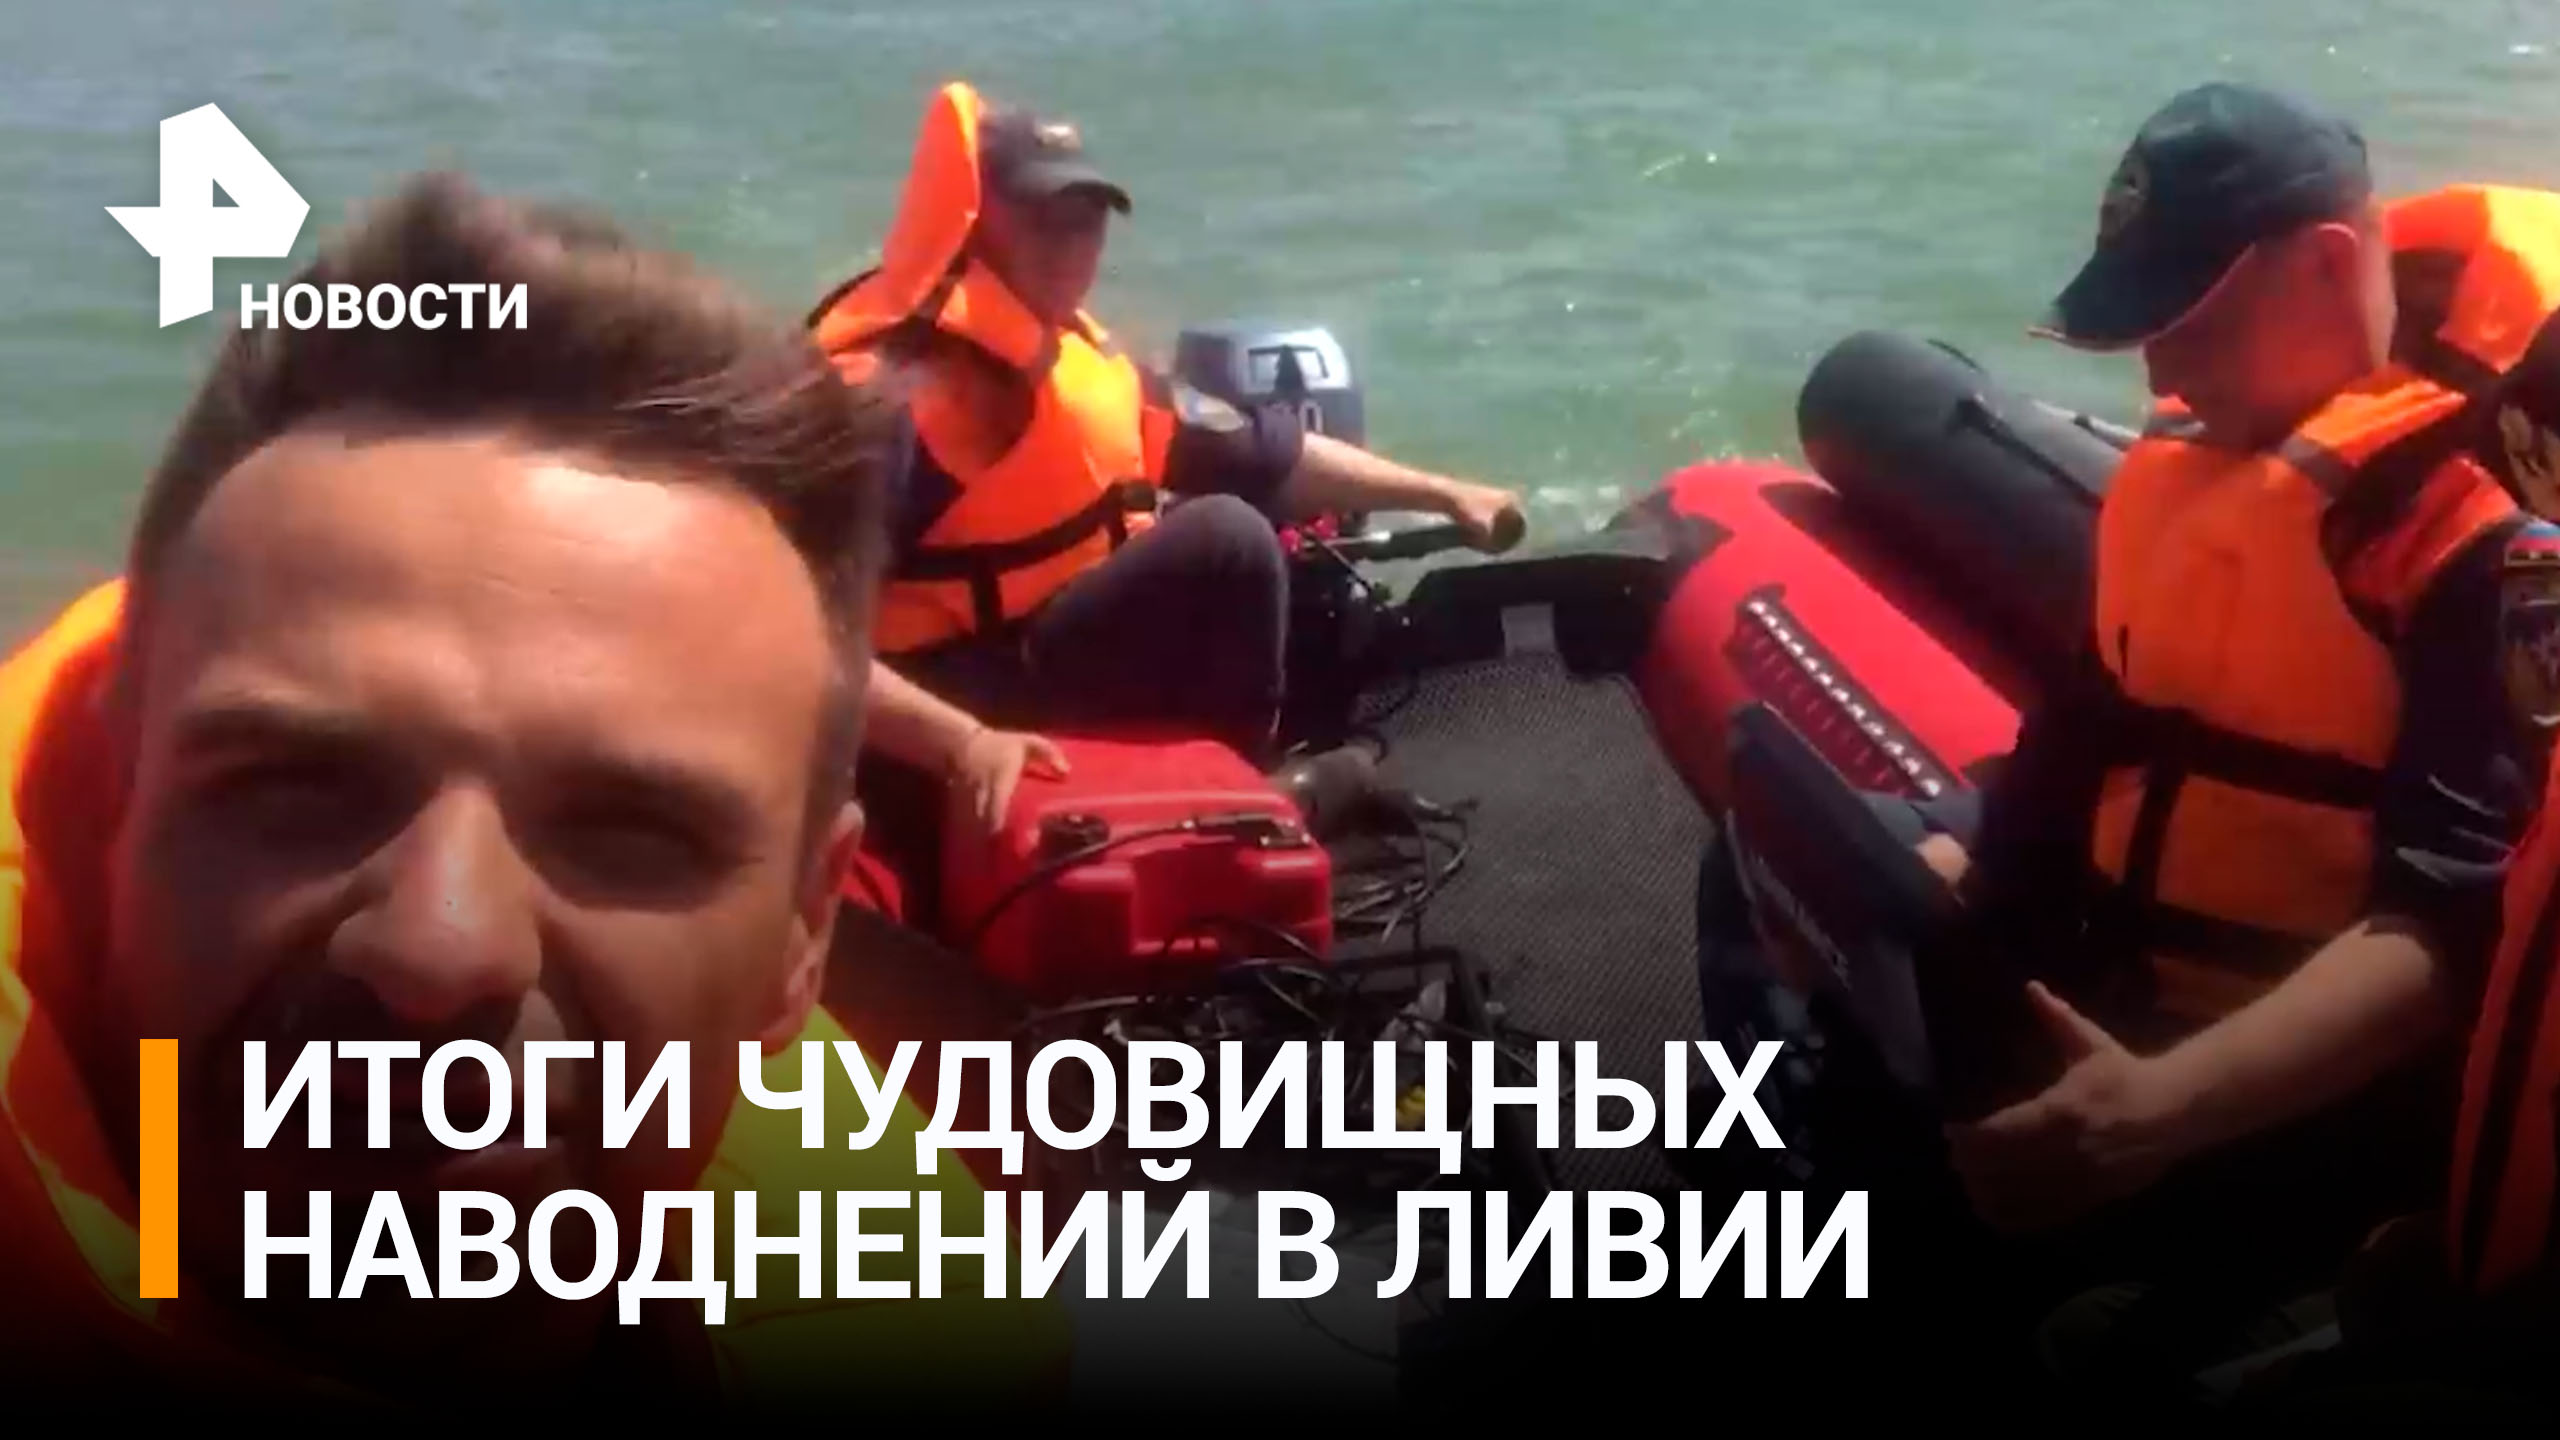 Российские спасатели помогают разбирать завалы после наводнения Ливии  / РЕН Новости